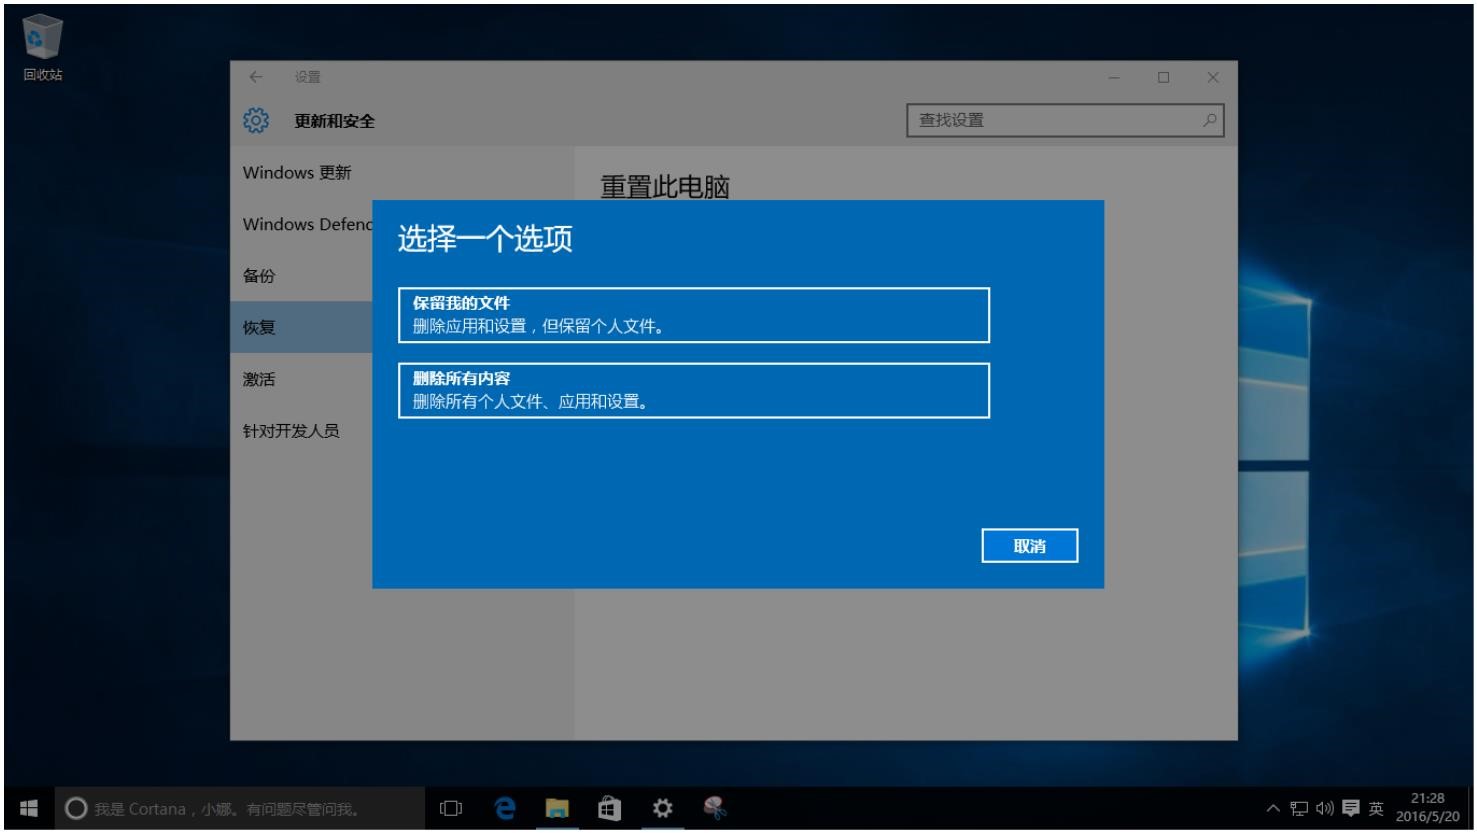 Windows10用户手册 - Windows 10 系统维护 - 重置系统